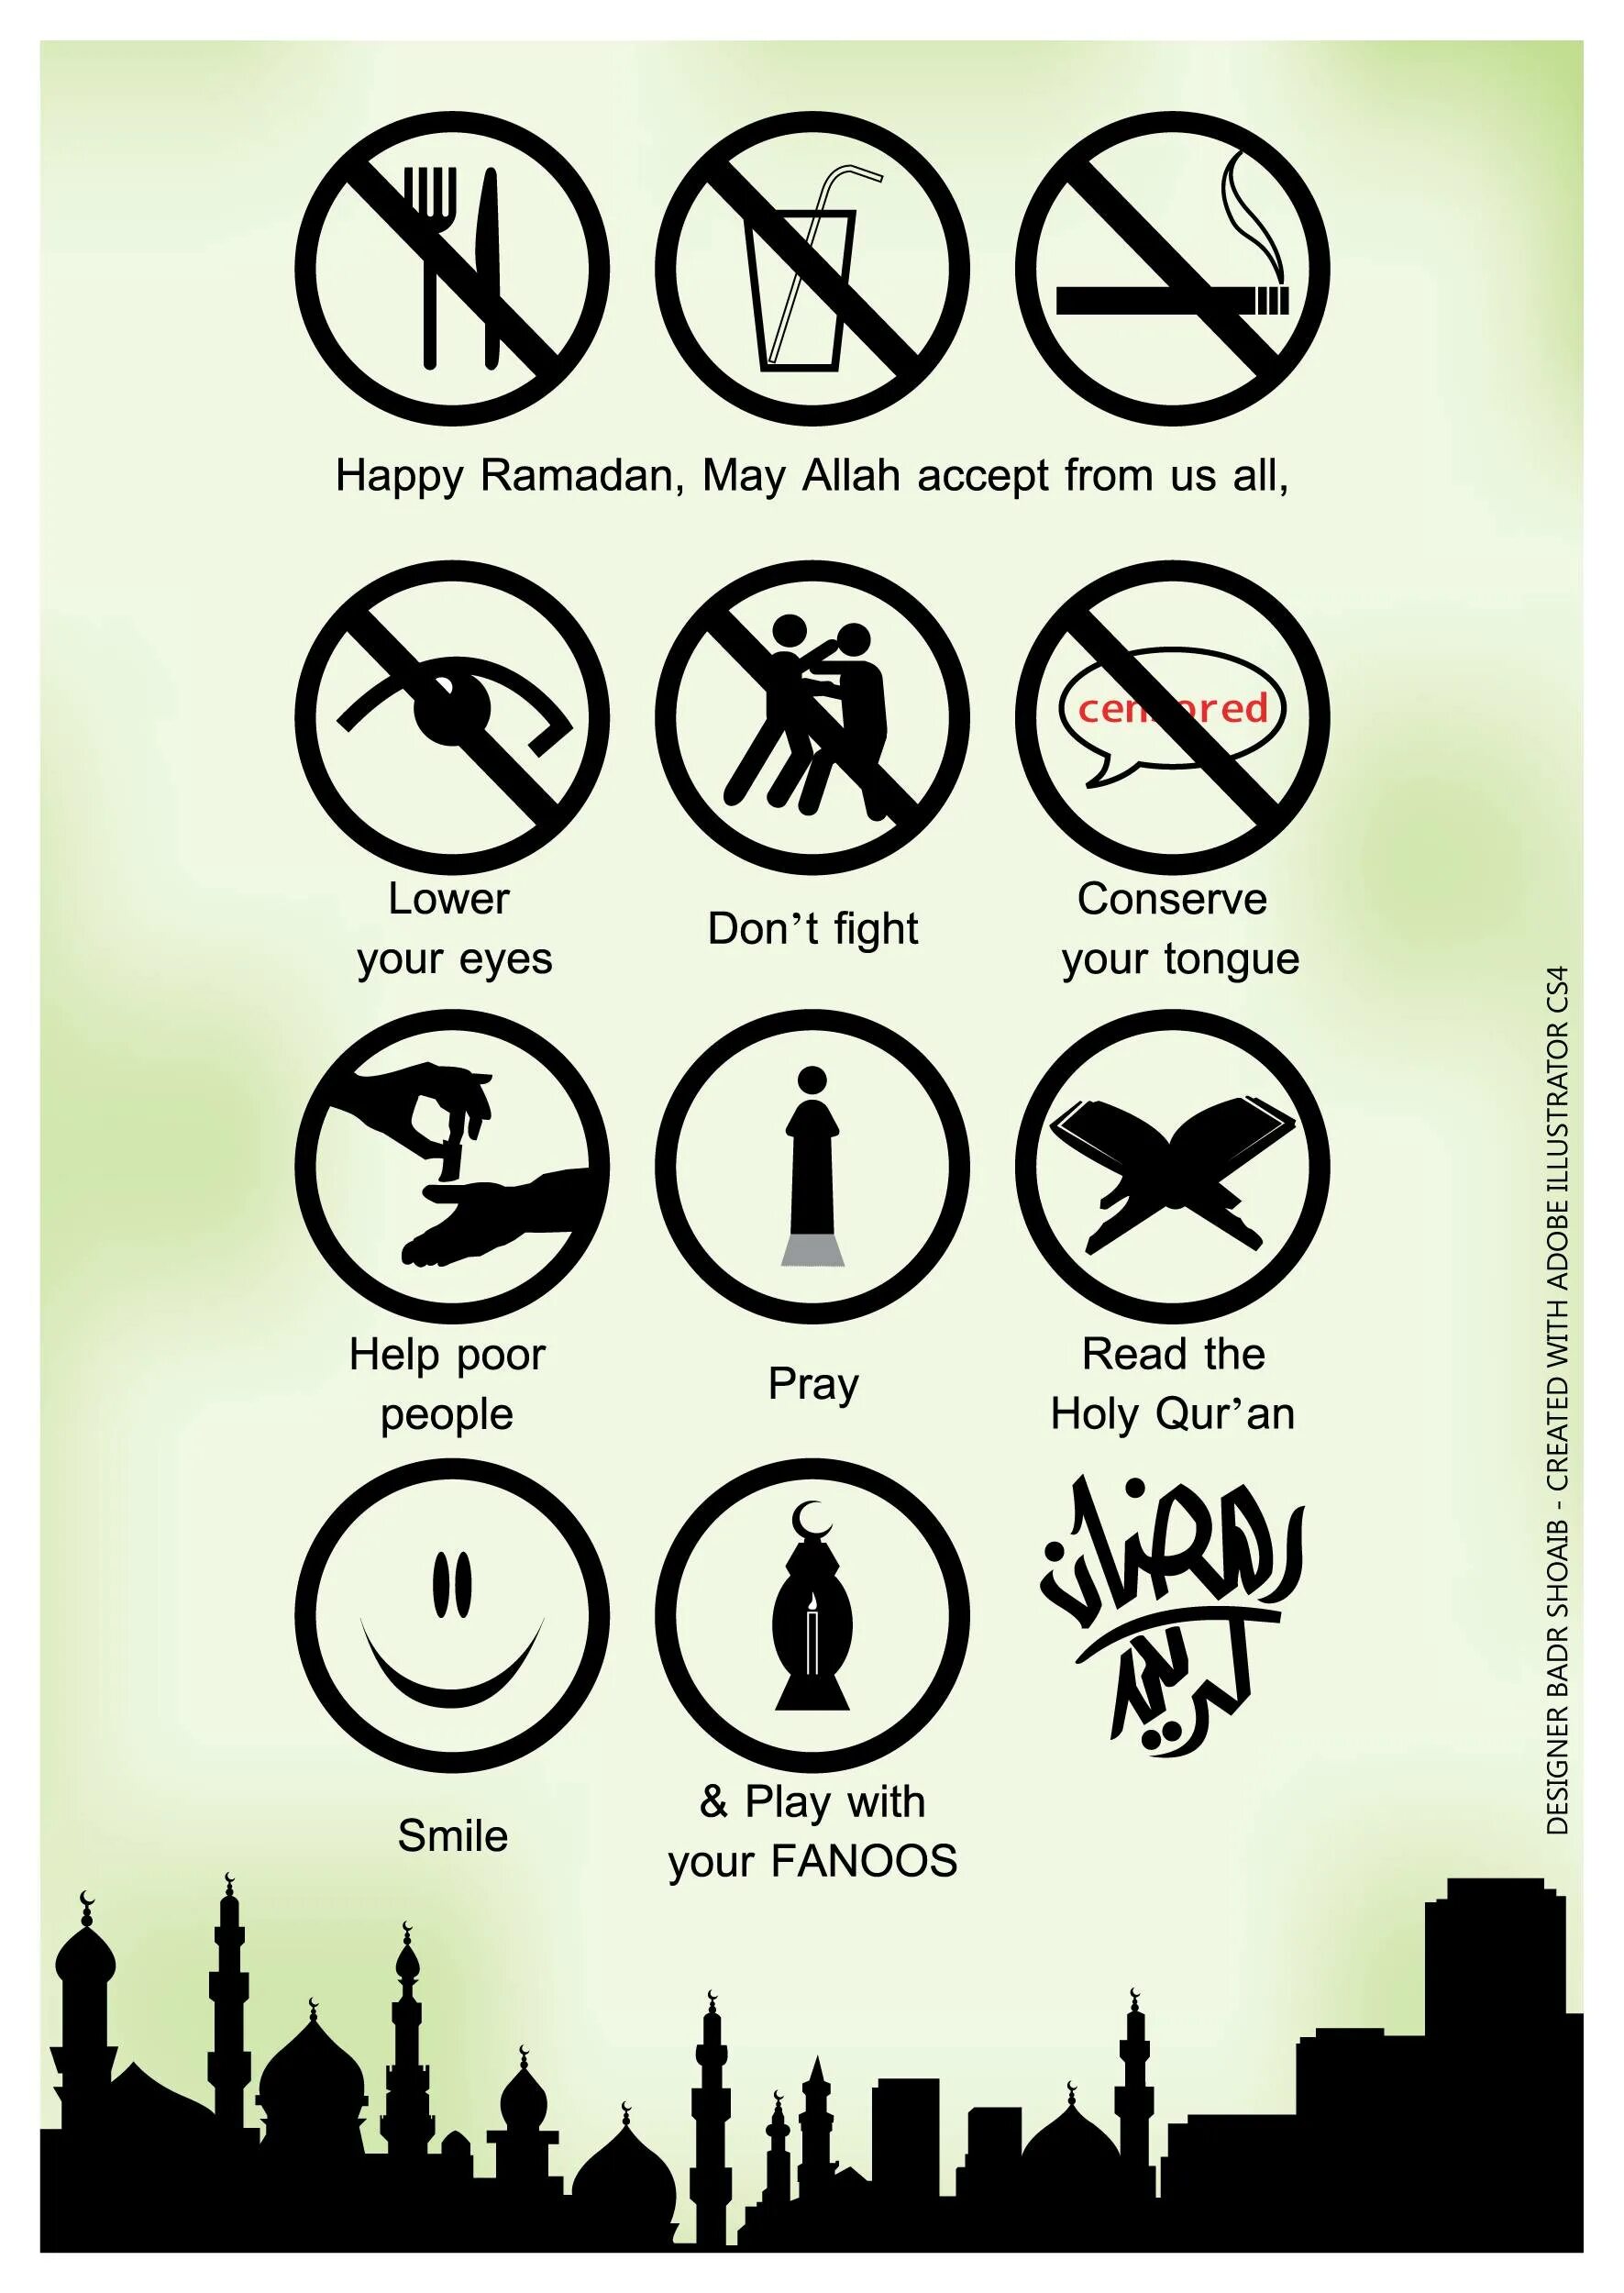 Рамадан. Что запрещено делать в Рамадан. Что запрещено делать в месяц Рамадан. Запреты в Рамадан для мужчин. Что нельзя делать в уразу